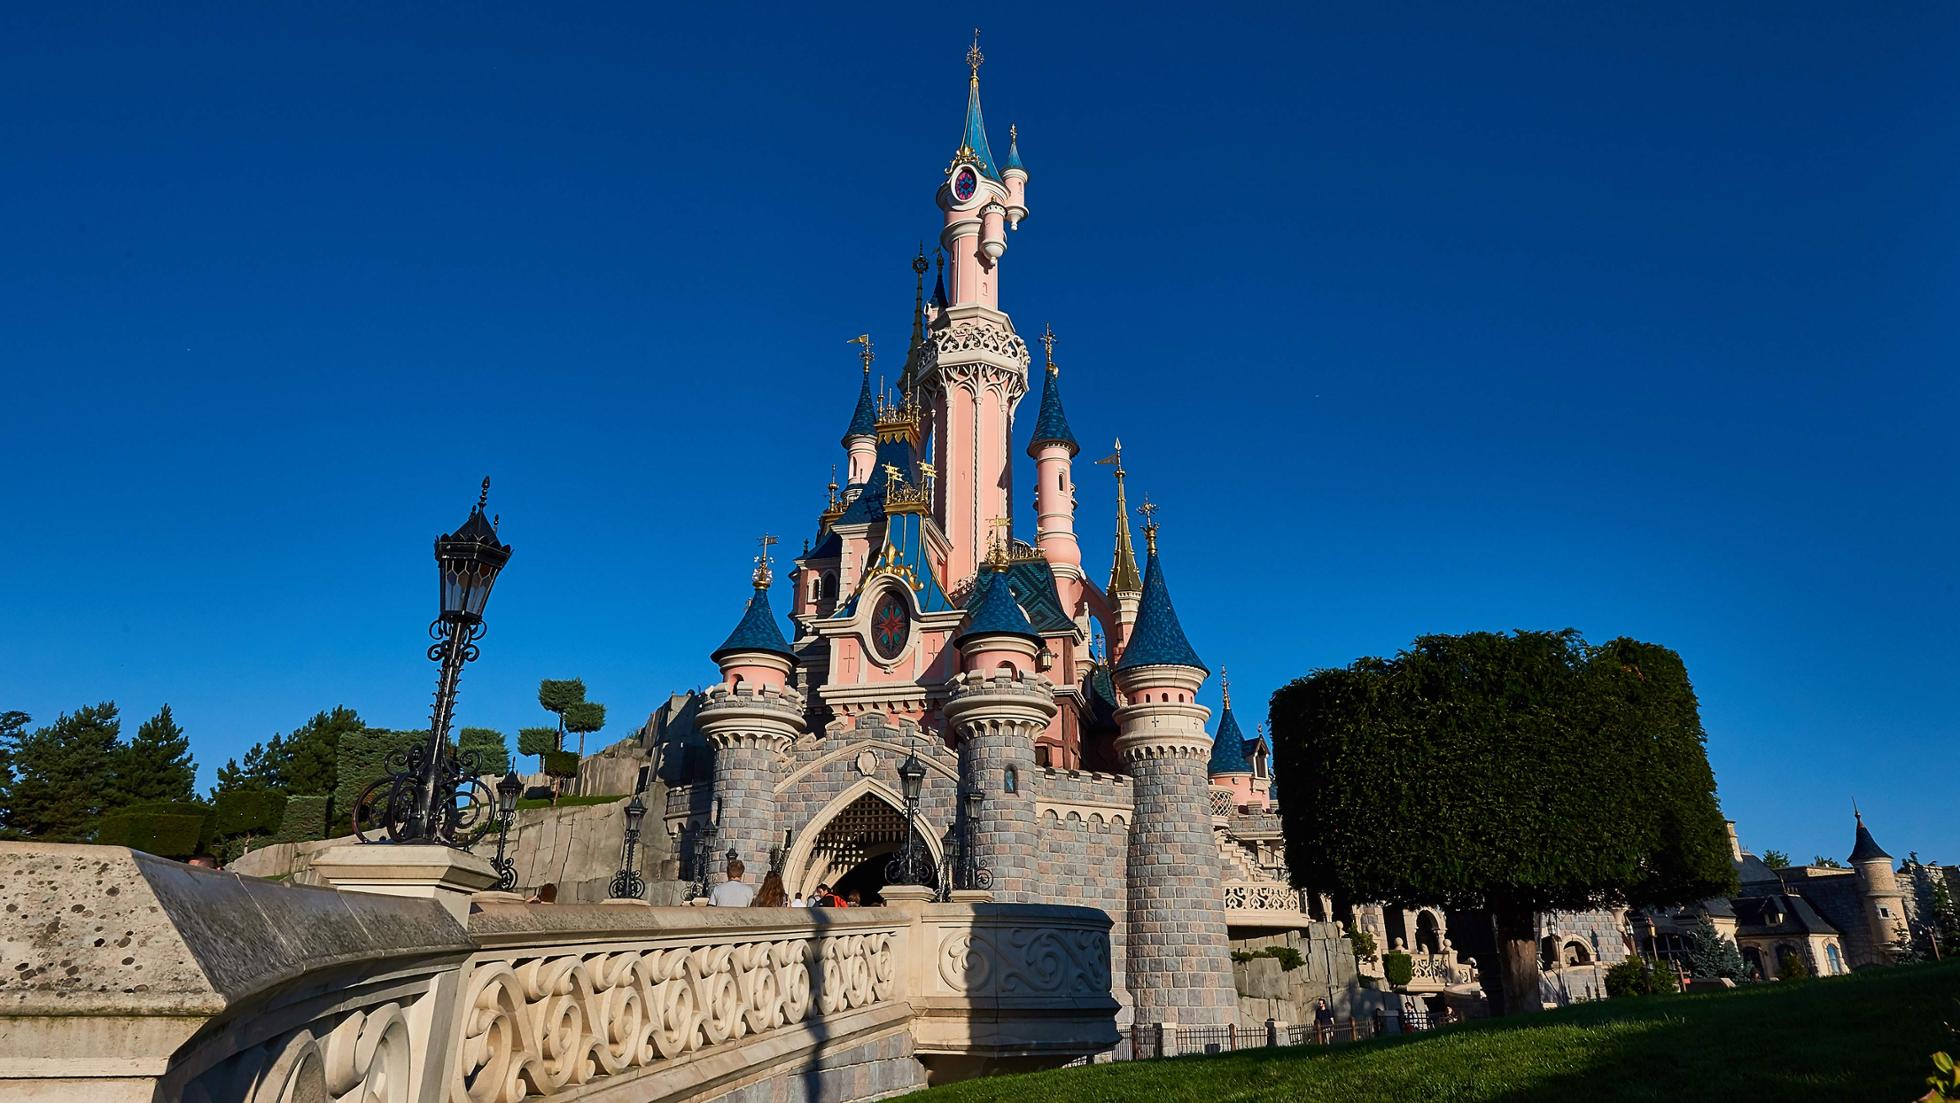 Sleeping Castle | Disneyland Paris